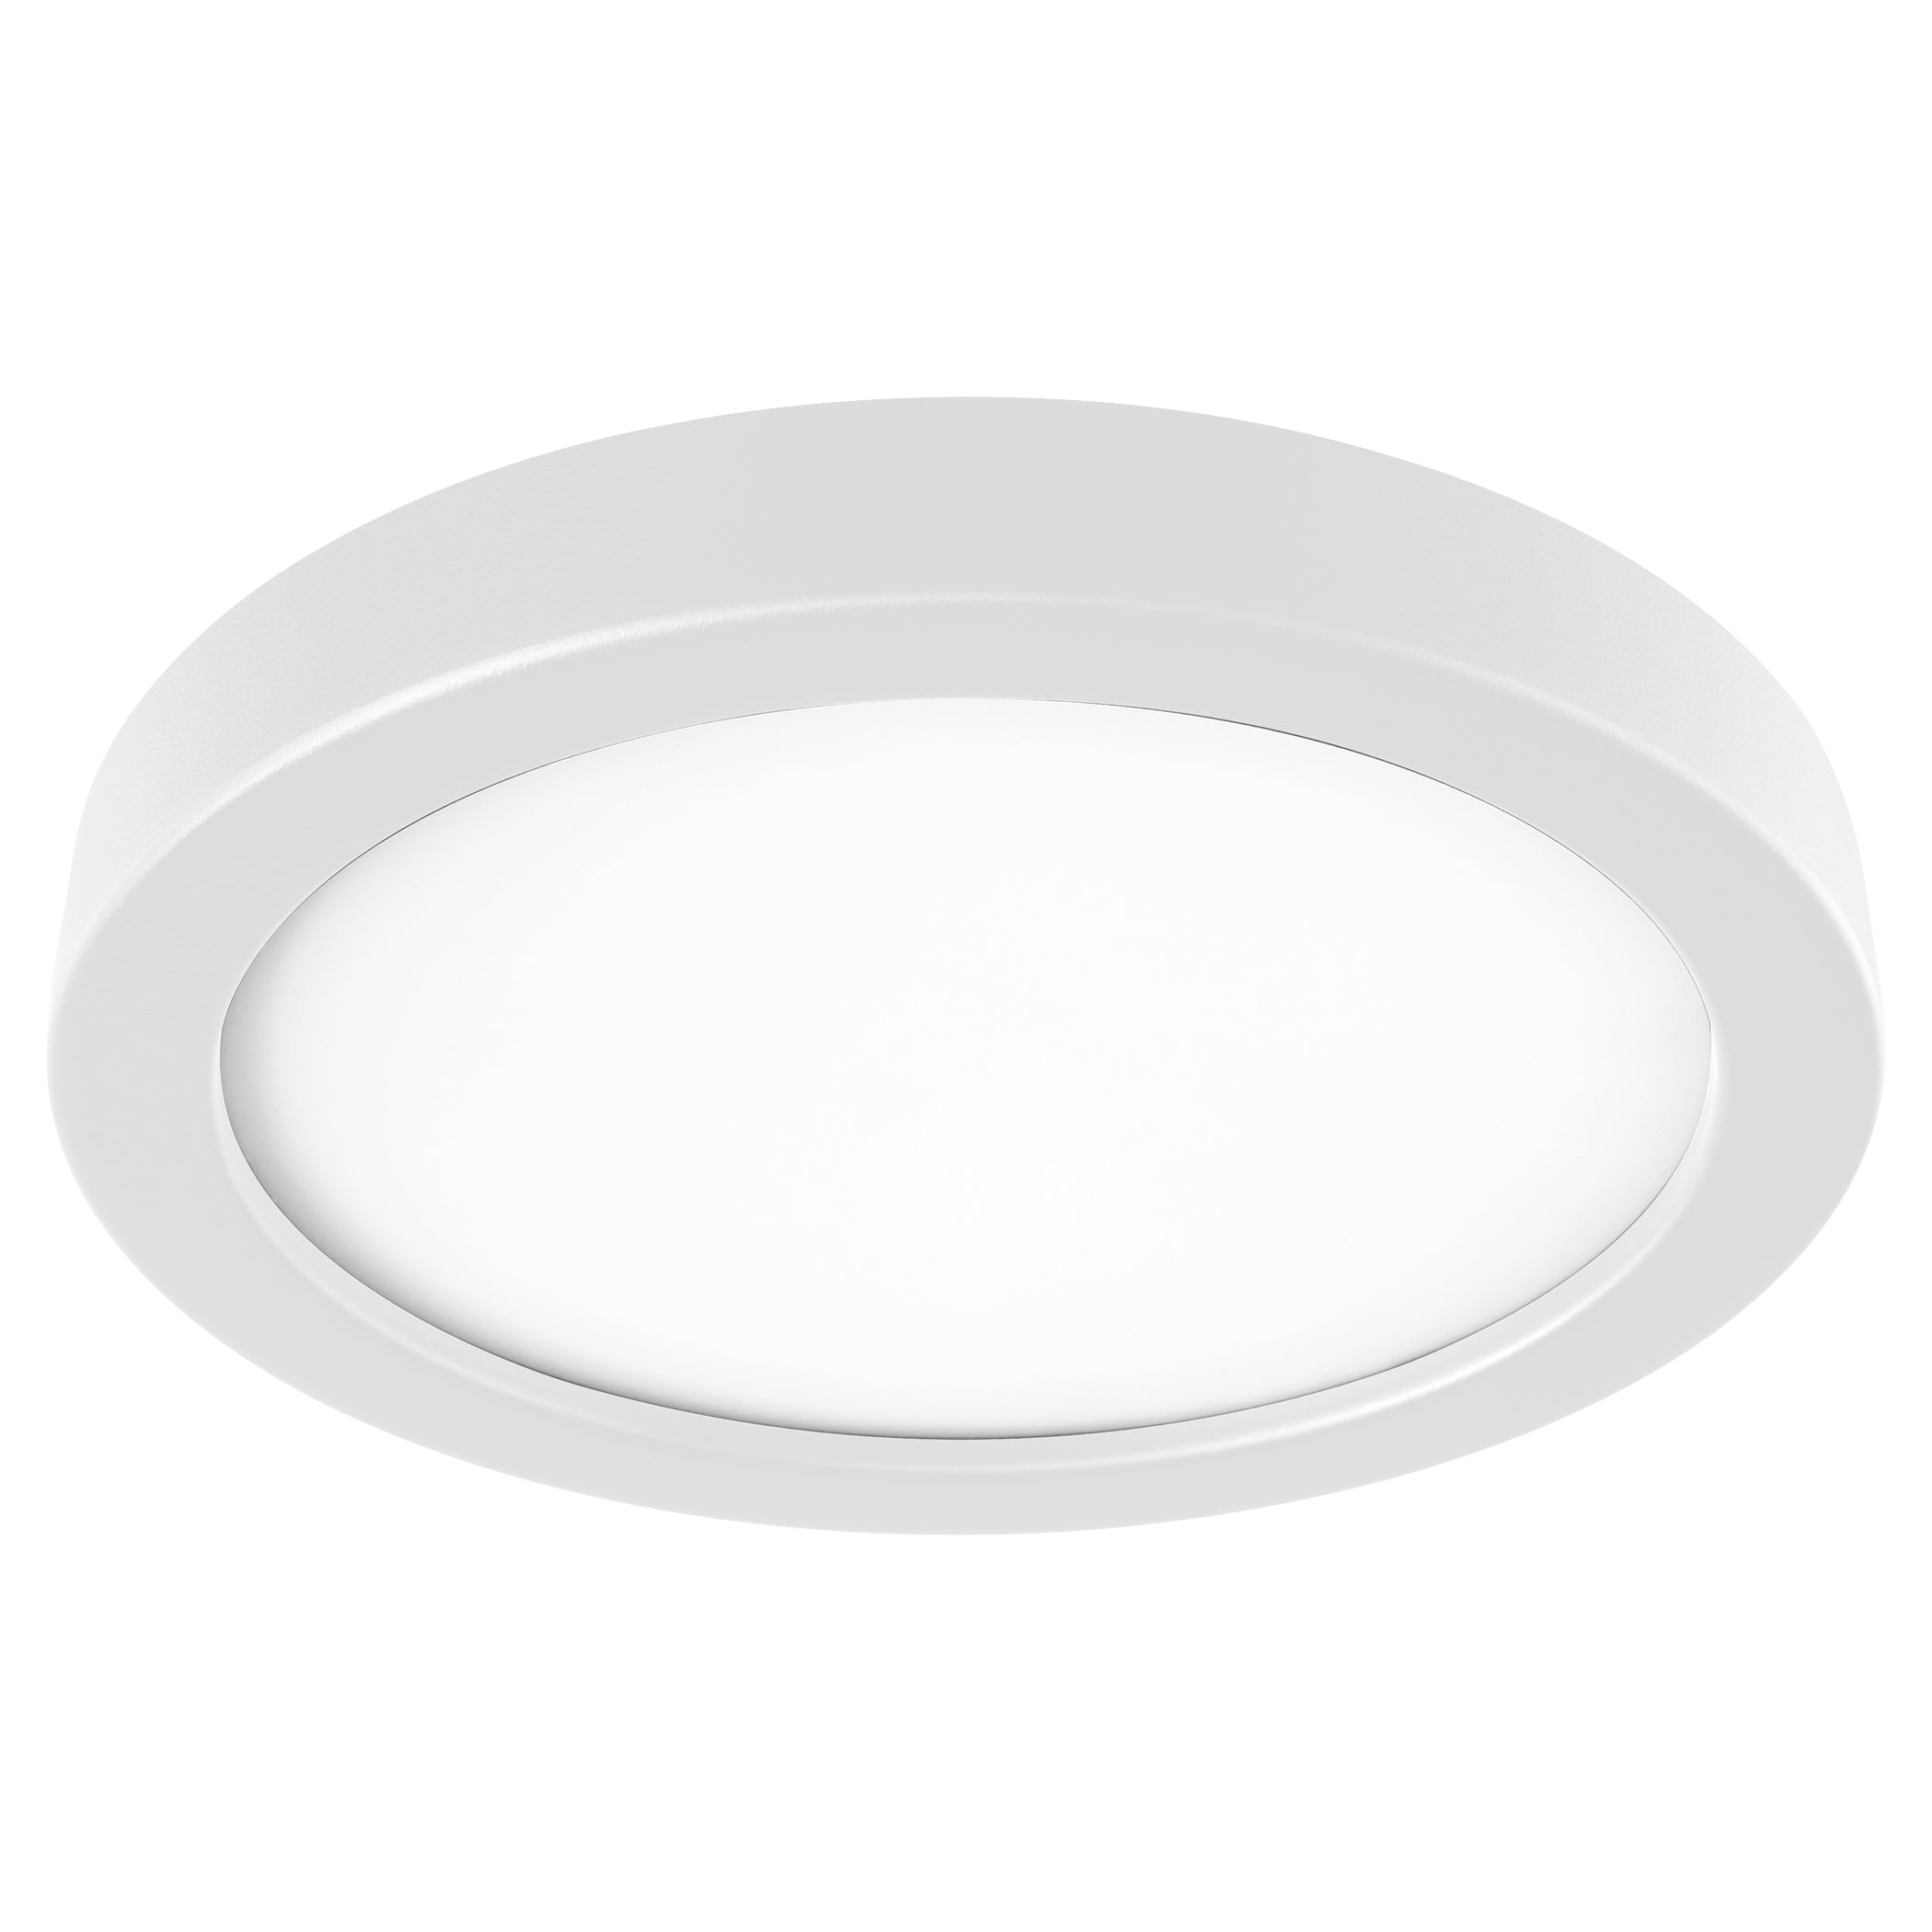 Oxygen Adora 3-9-110-6 Ceiling Fan - White